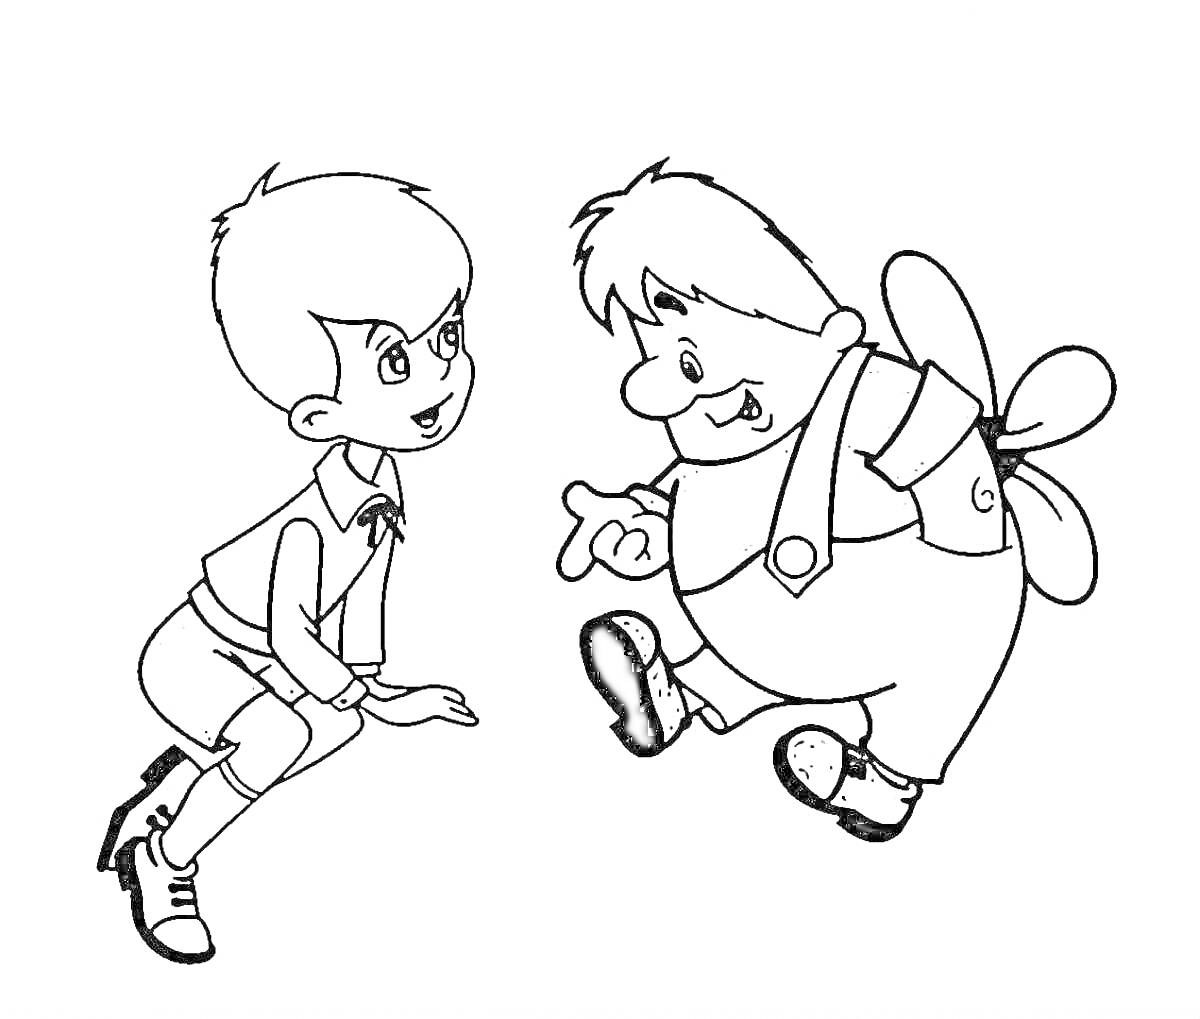 Раскраска Мальчик разговаривает с летающим персонажем с пропеллером на спине